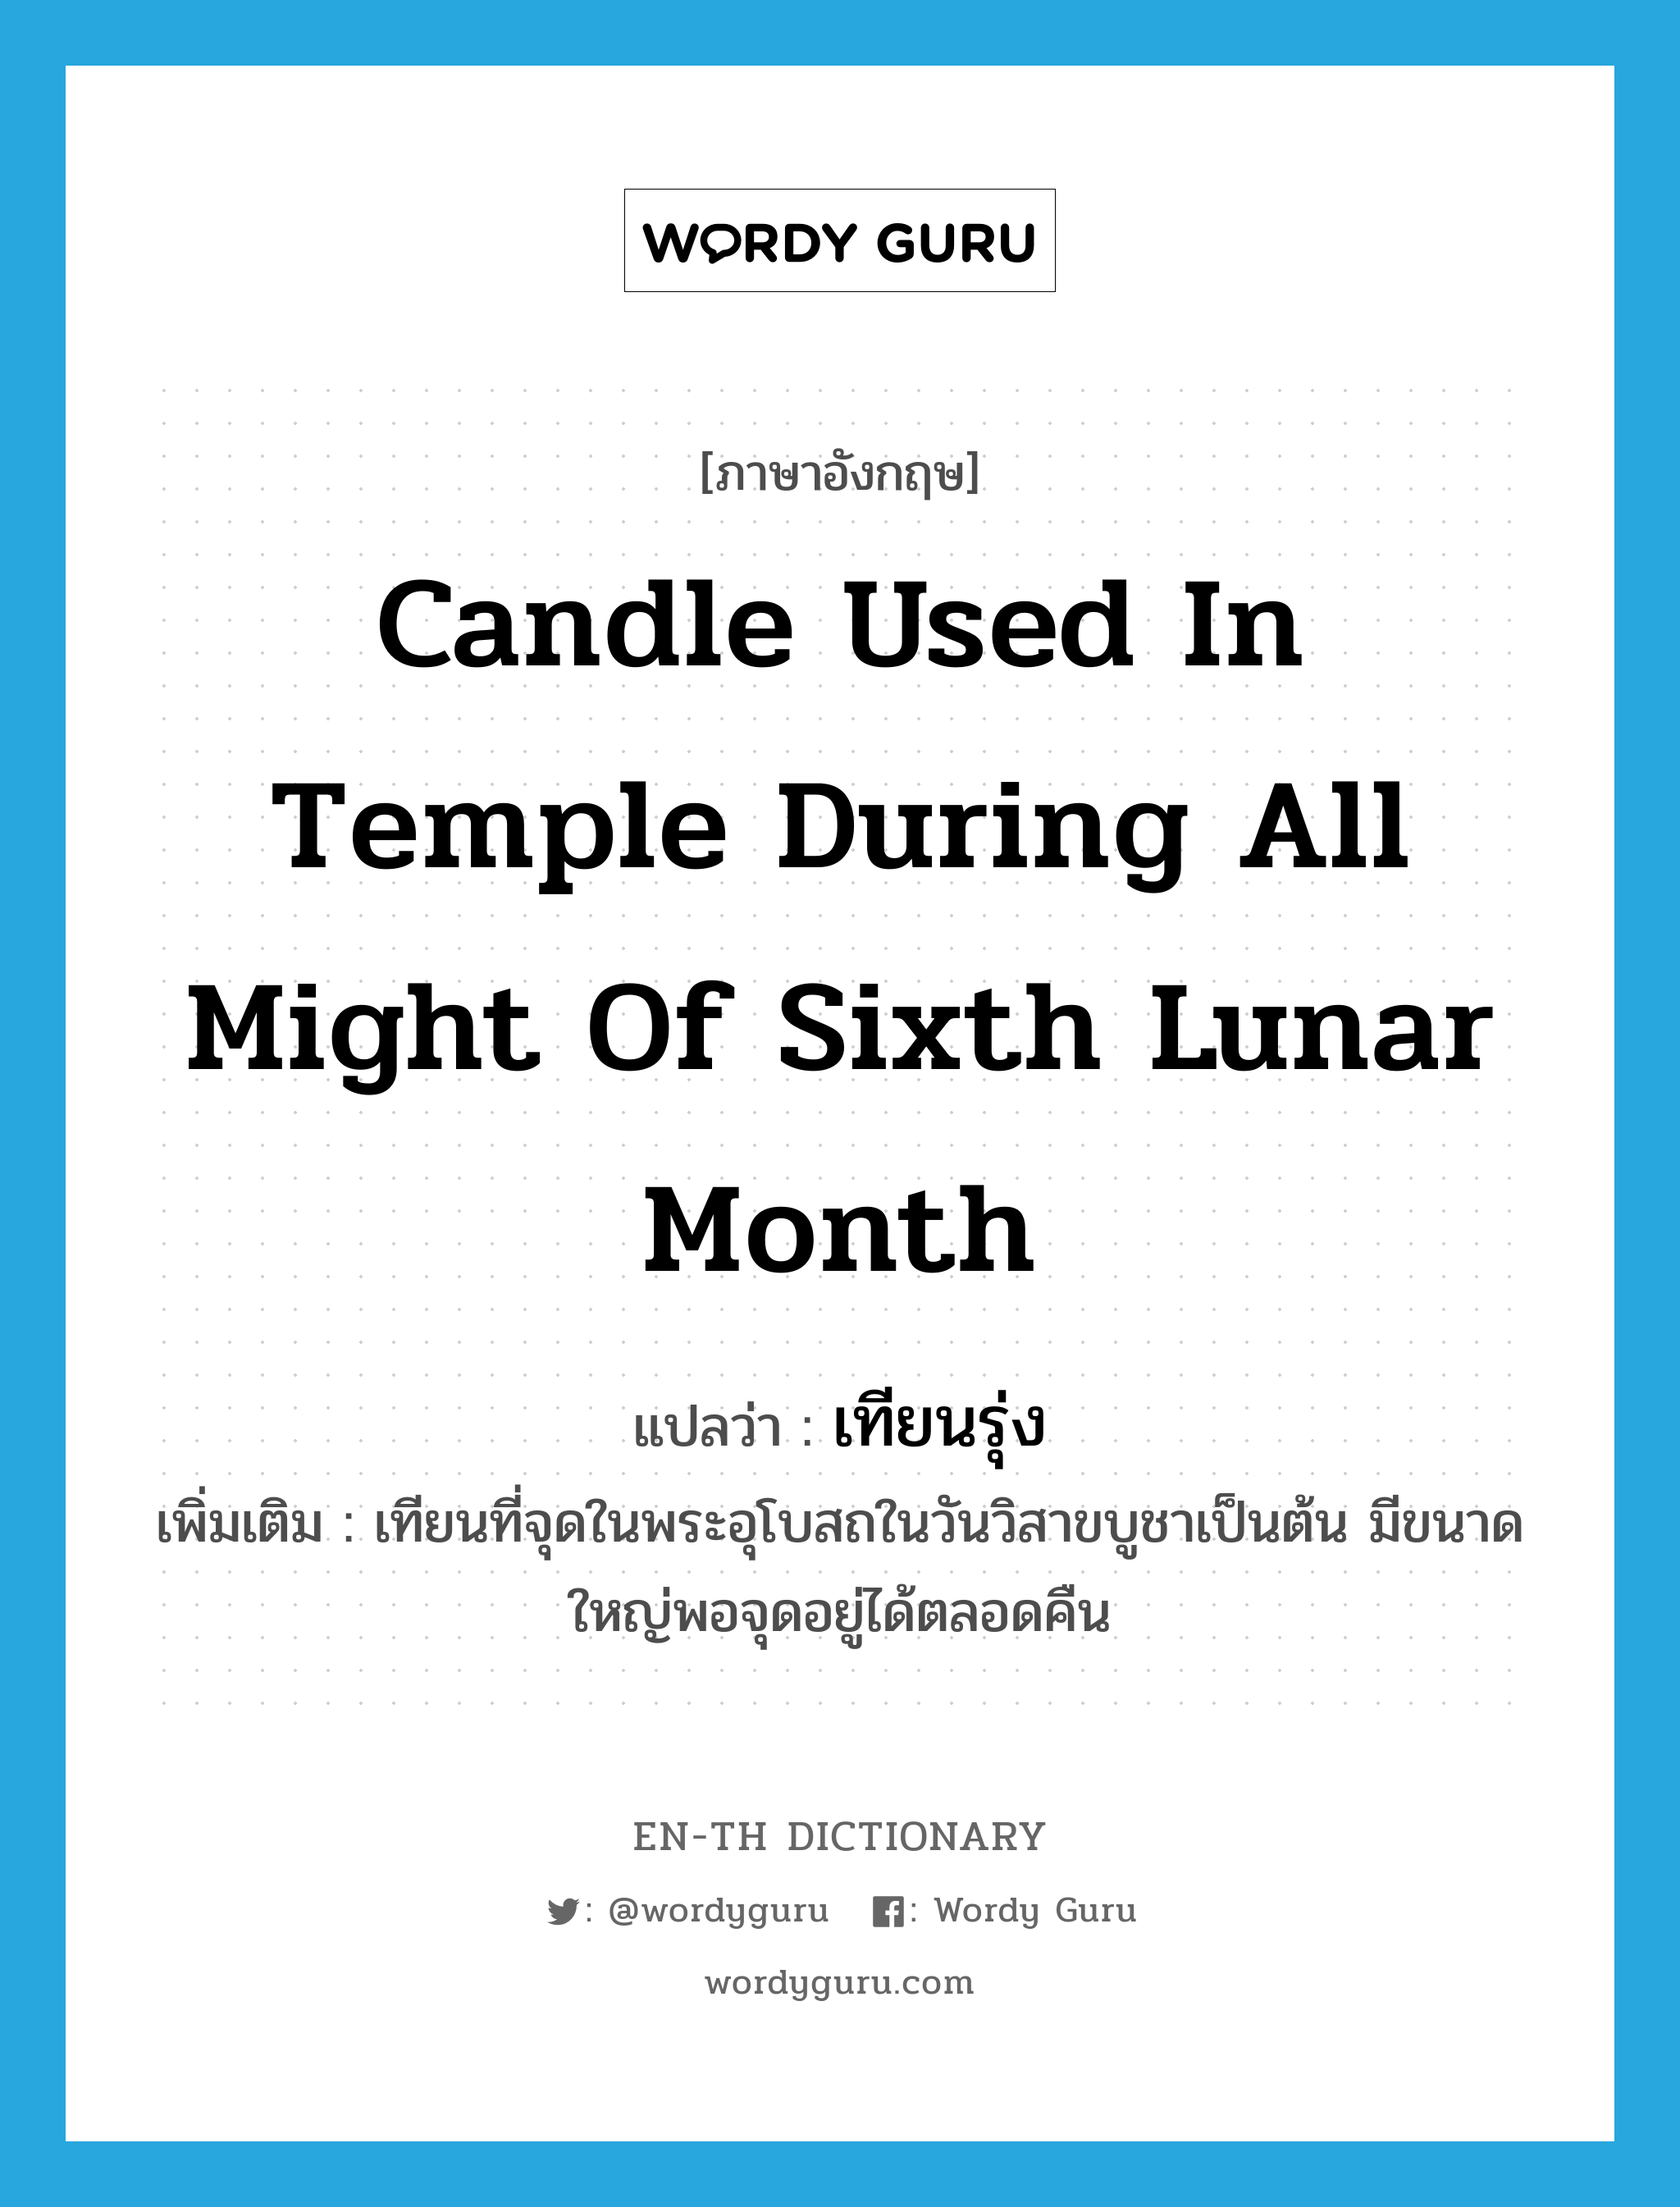 candle used in temple during all might of sixth lunar month แปลว่า?, คำศัพท์ภาษาอังกฤษ candle used in temple during all might of sixth lunar month แปลว่า เทียนรุ่ง ประเภท N เพิ่มเติม เทียนที่จุดในพระอุโบสถในวันวิสาขบูชาเป็นต้น มีขนาดใหญ่พอจุดอยู่ได้ตลอดคืน หมวด N